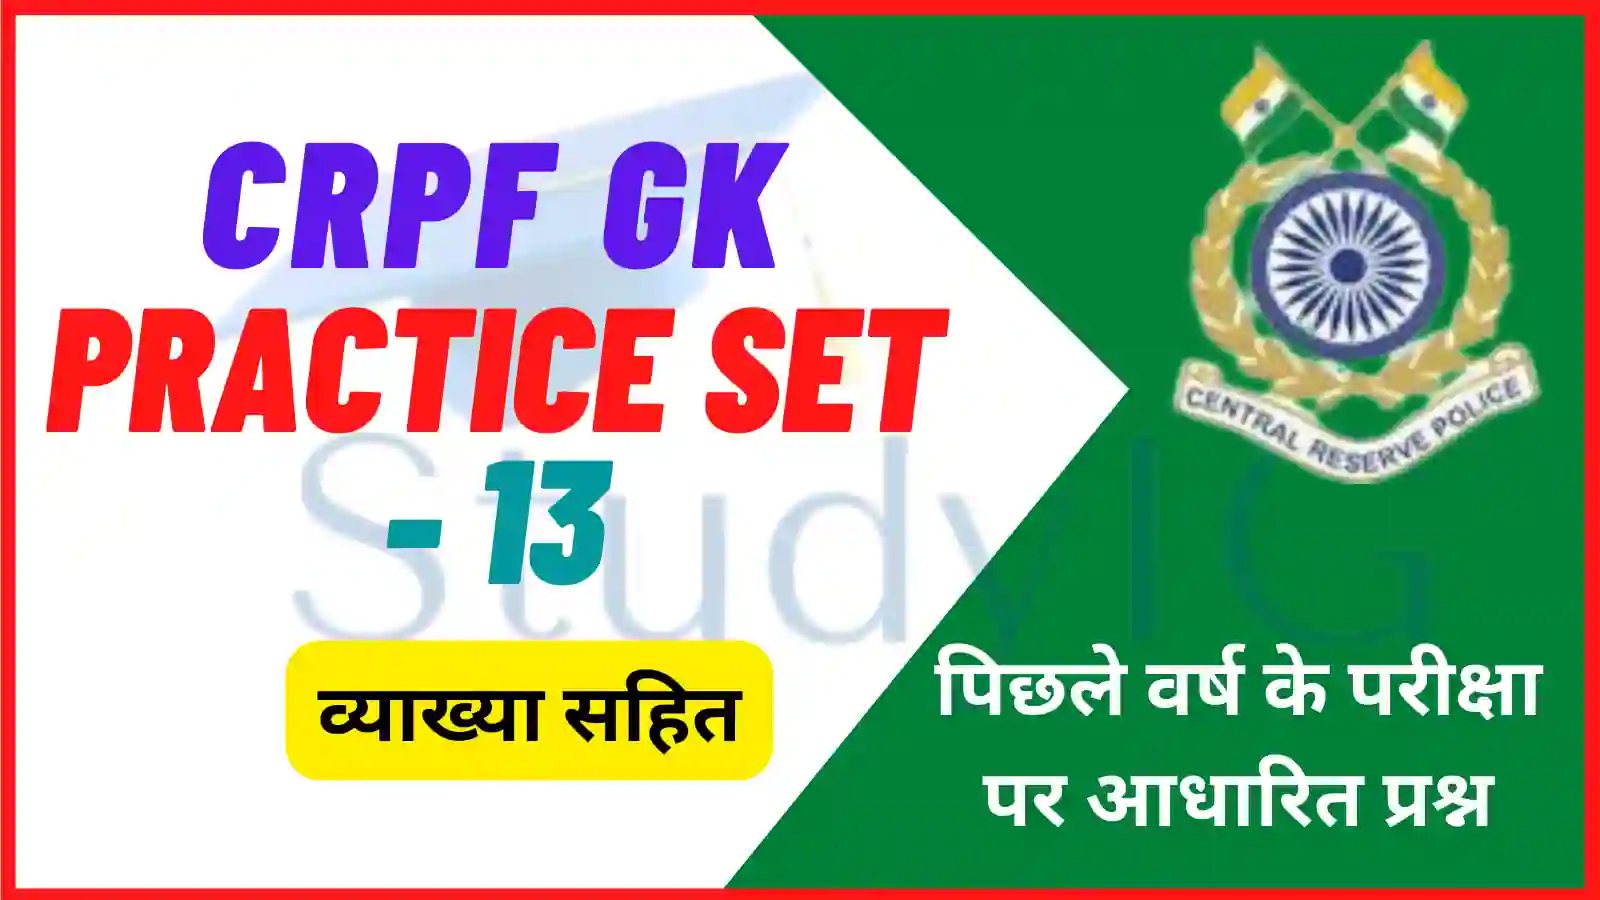 CRPF GK Practice Set -13